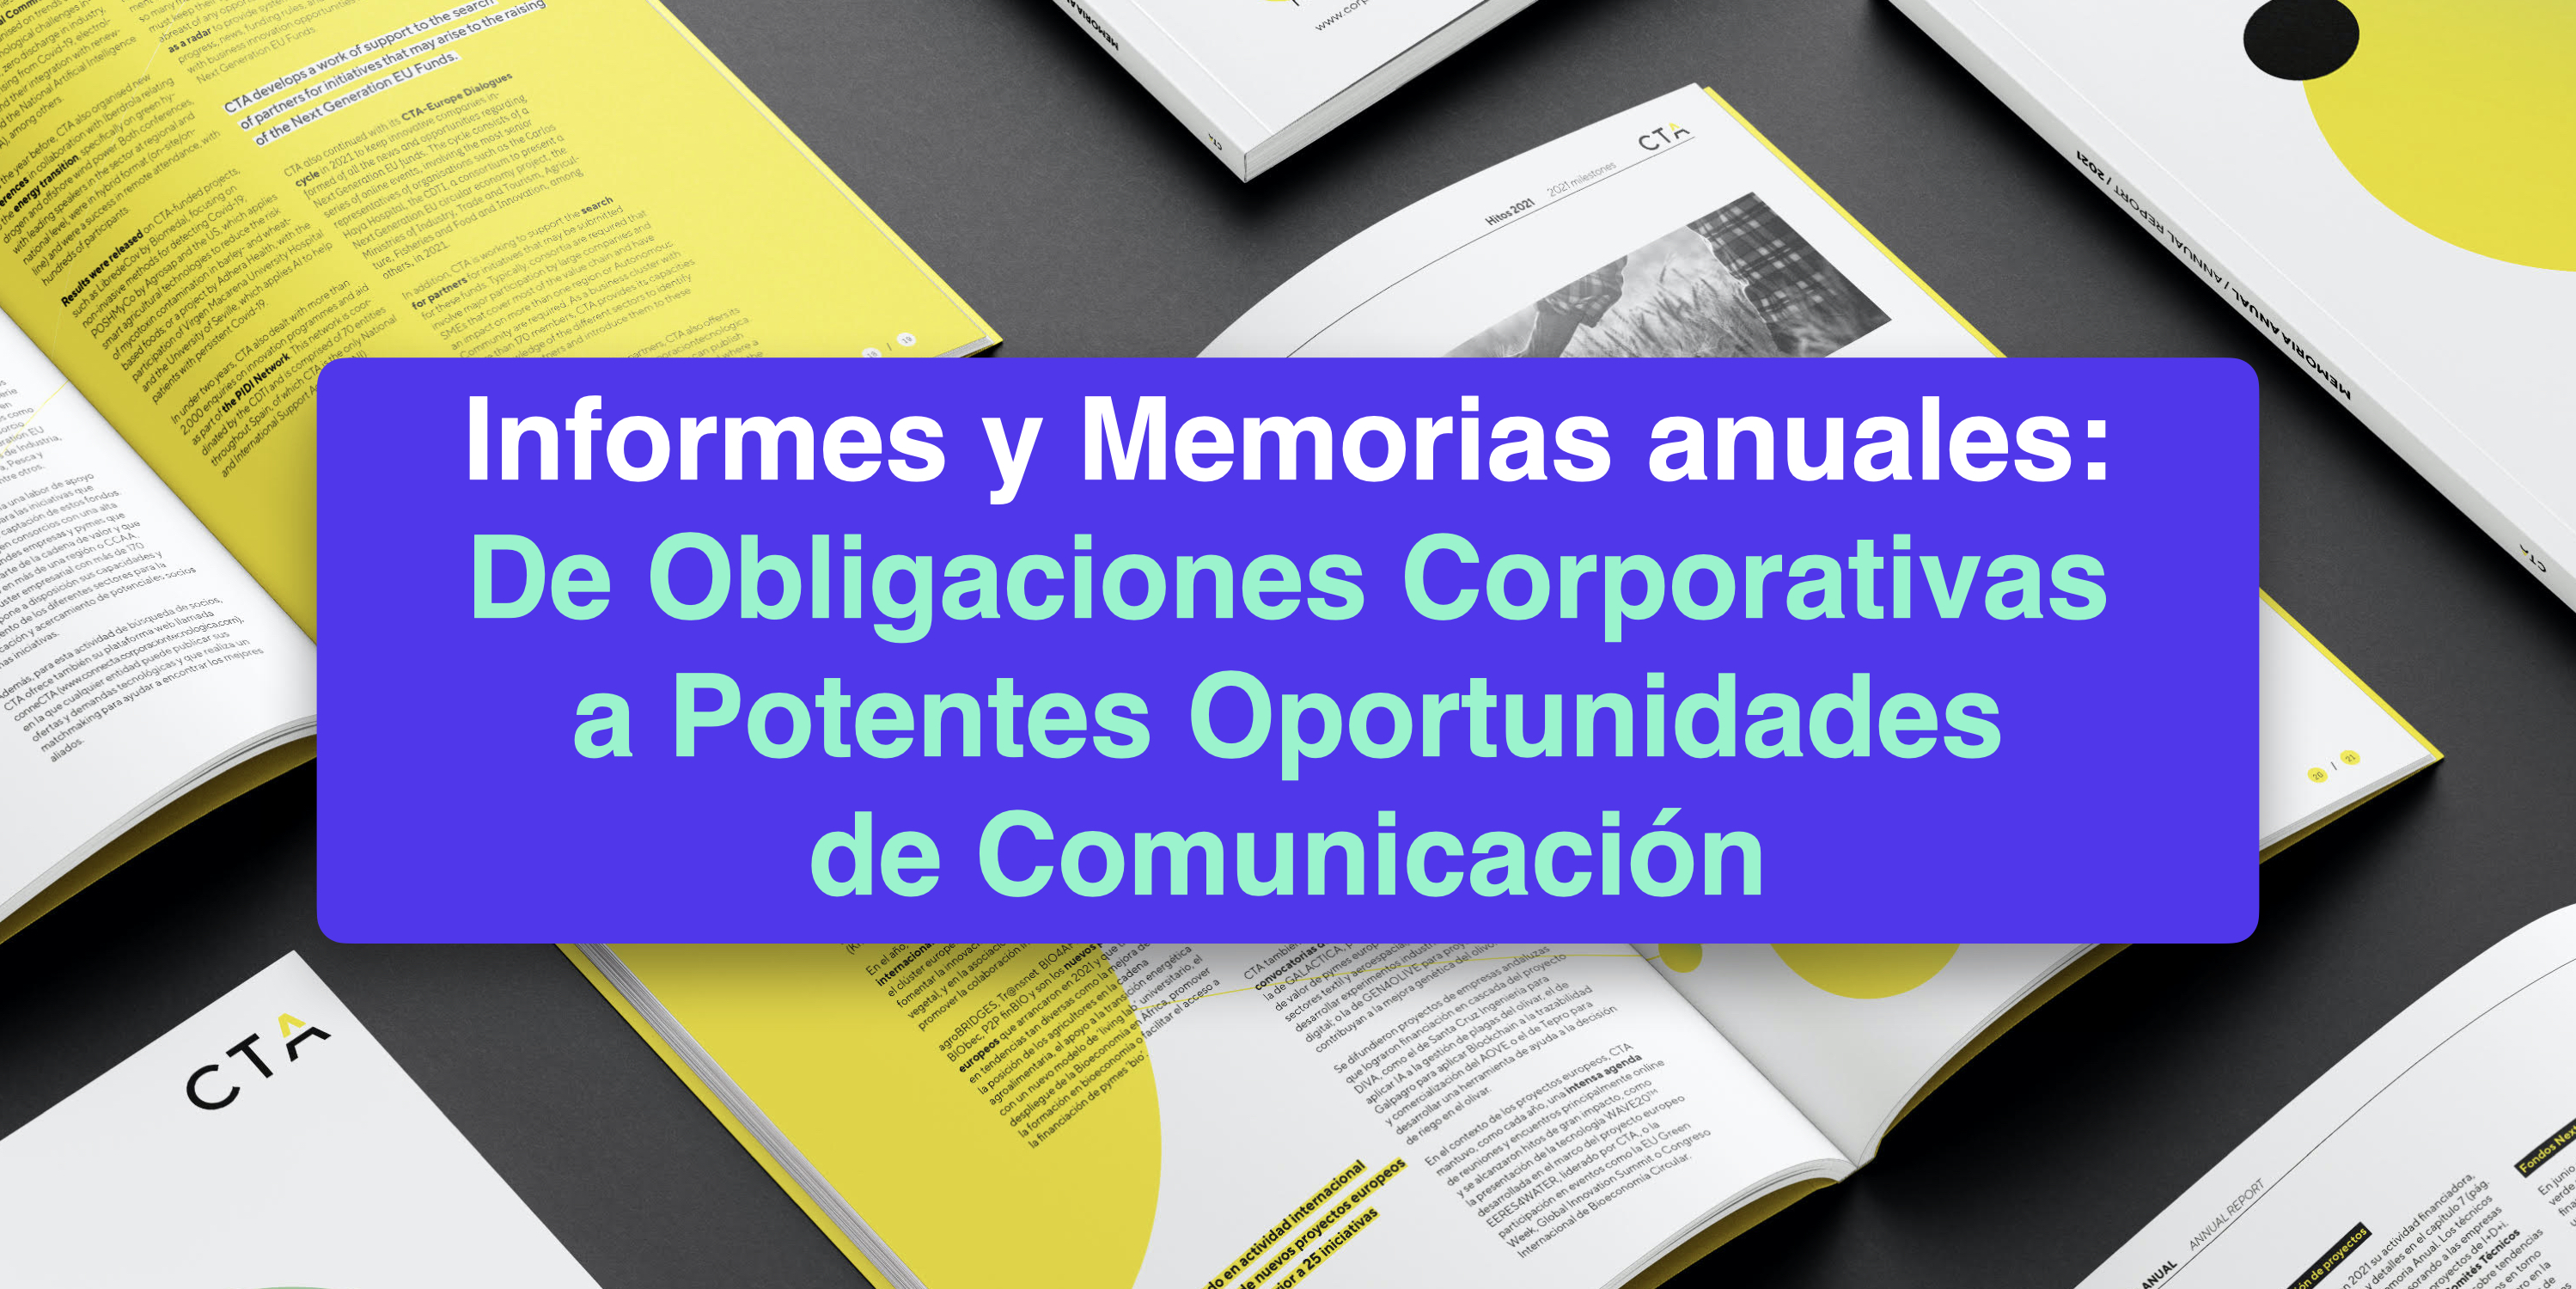 Informes y Memorias Anuales: De Obligaciones Corporativas a Potentes Oportunidades de Comunicación